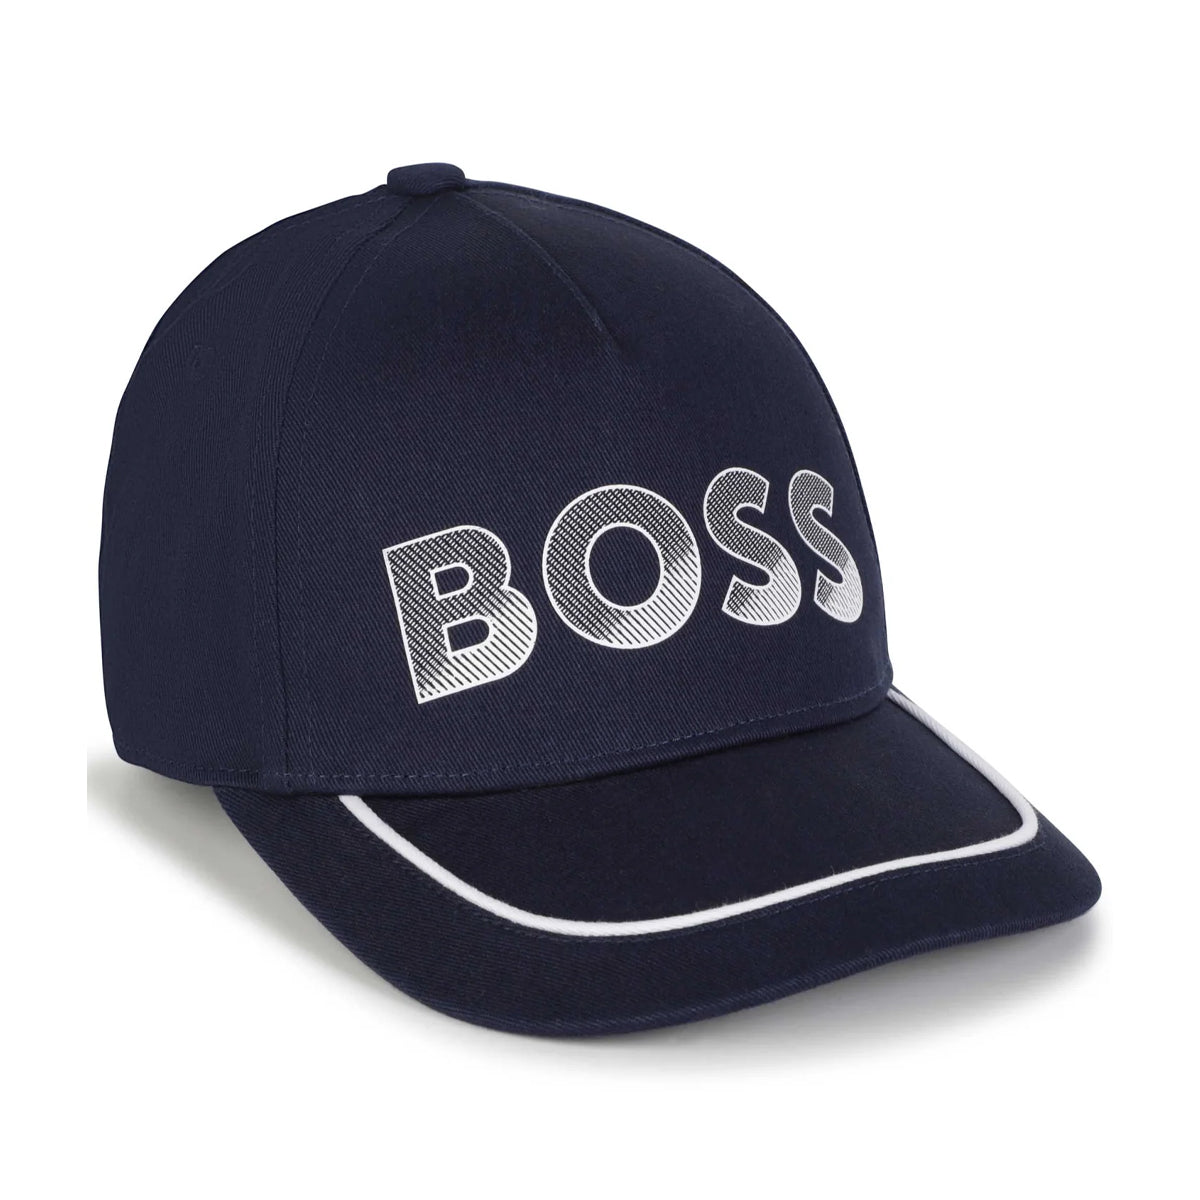 כובע מצחייה BOSS לוגו לבן לילדים